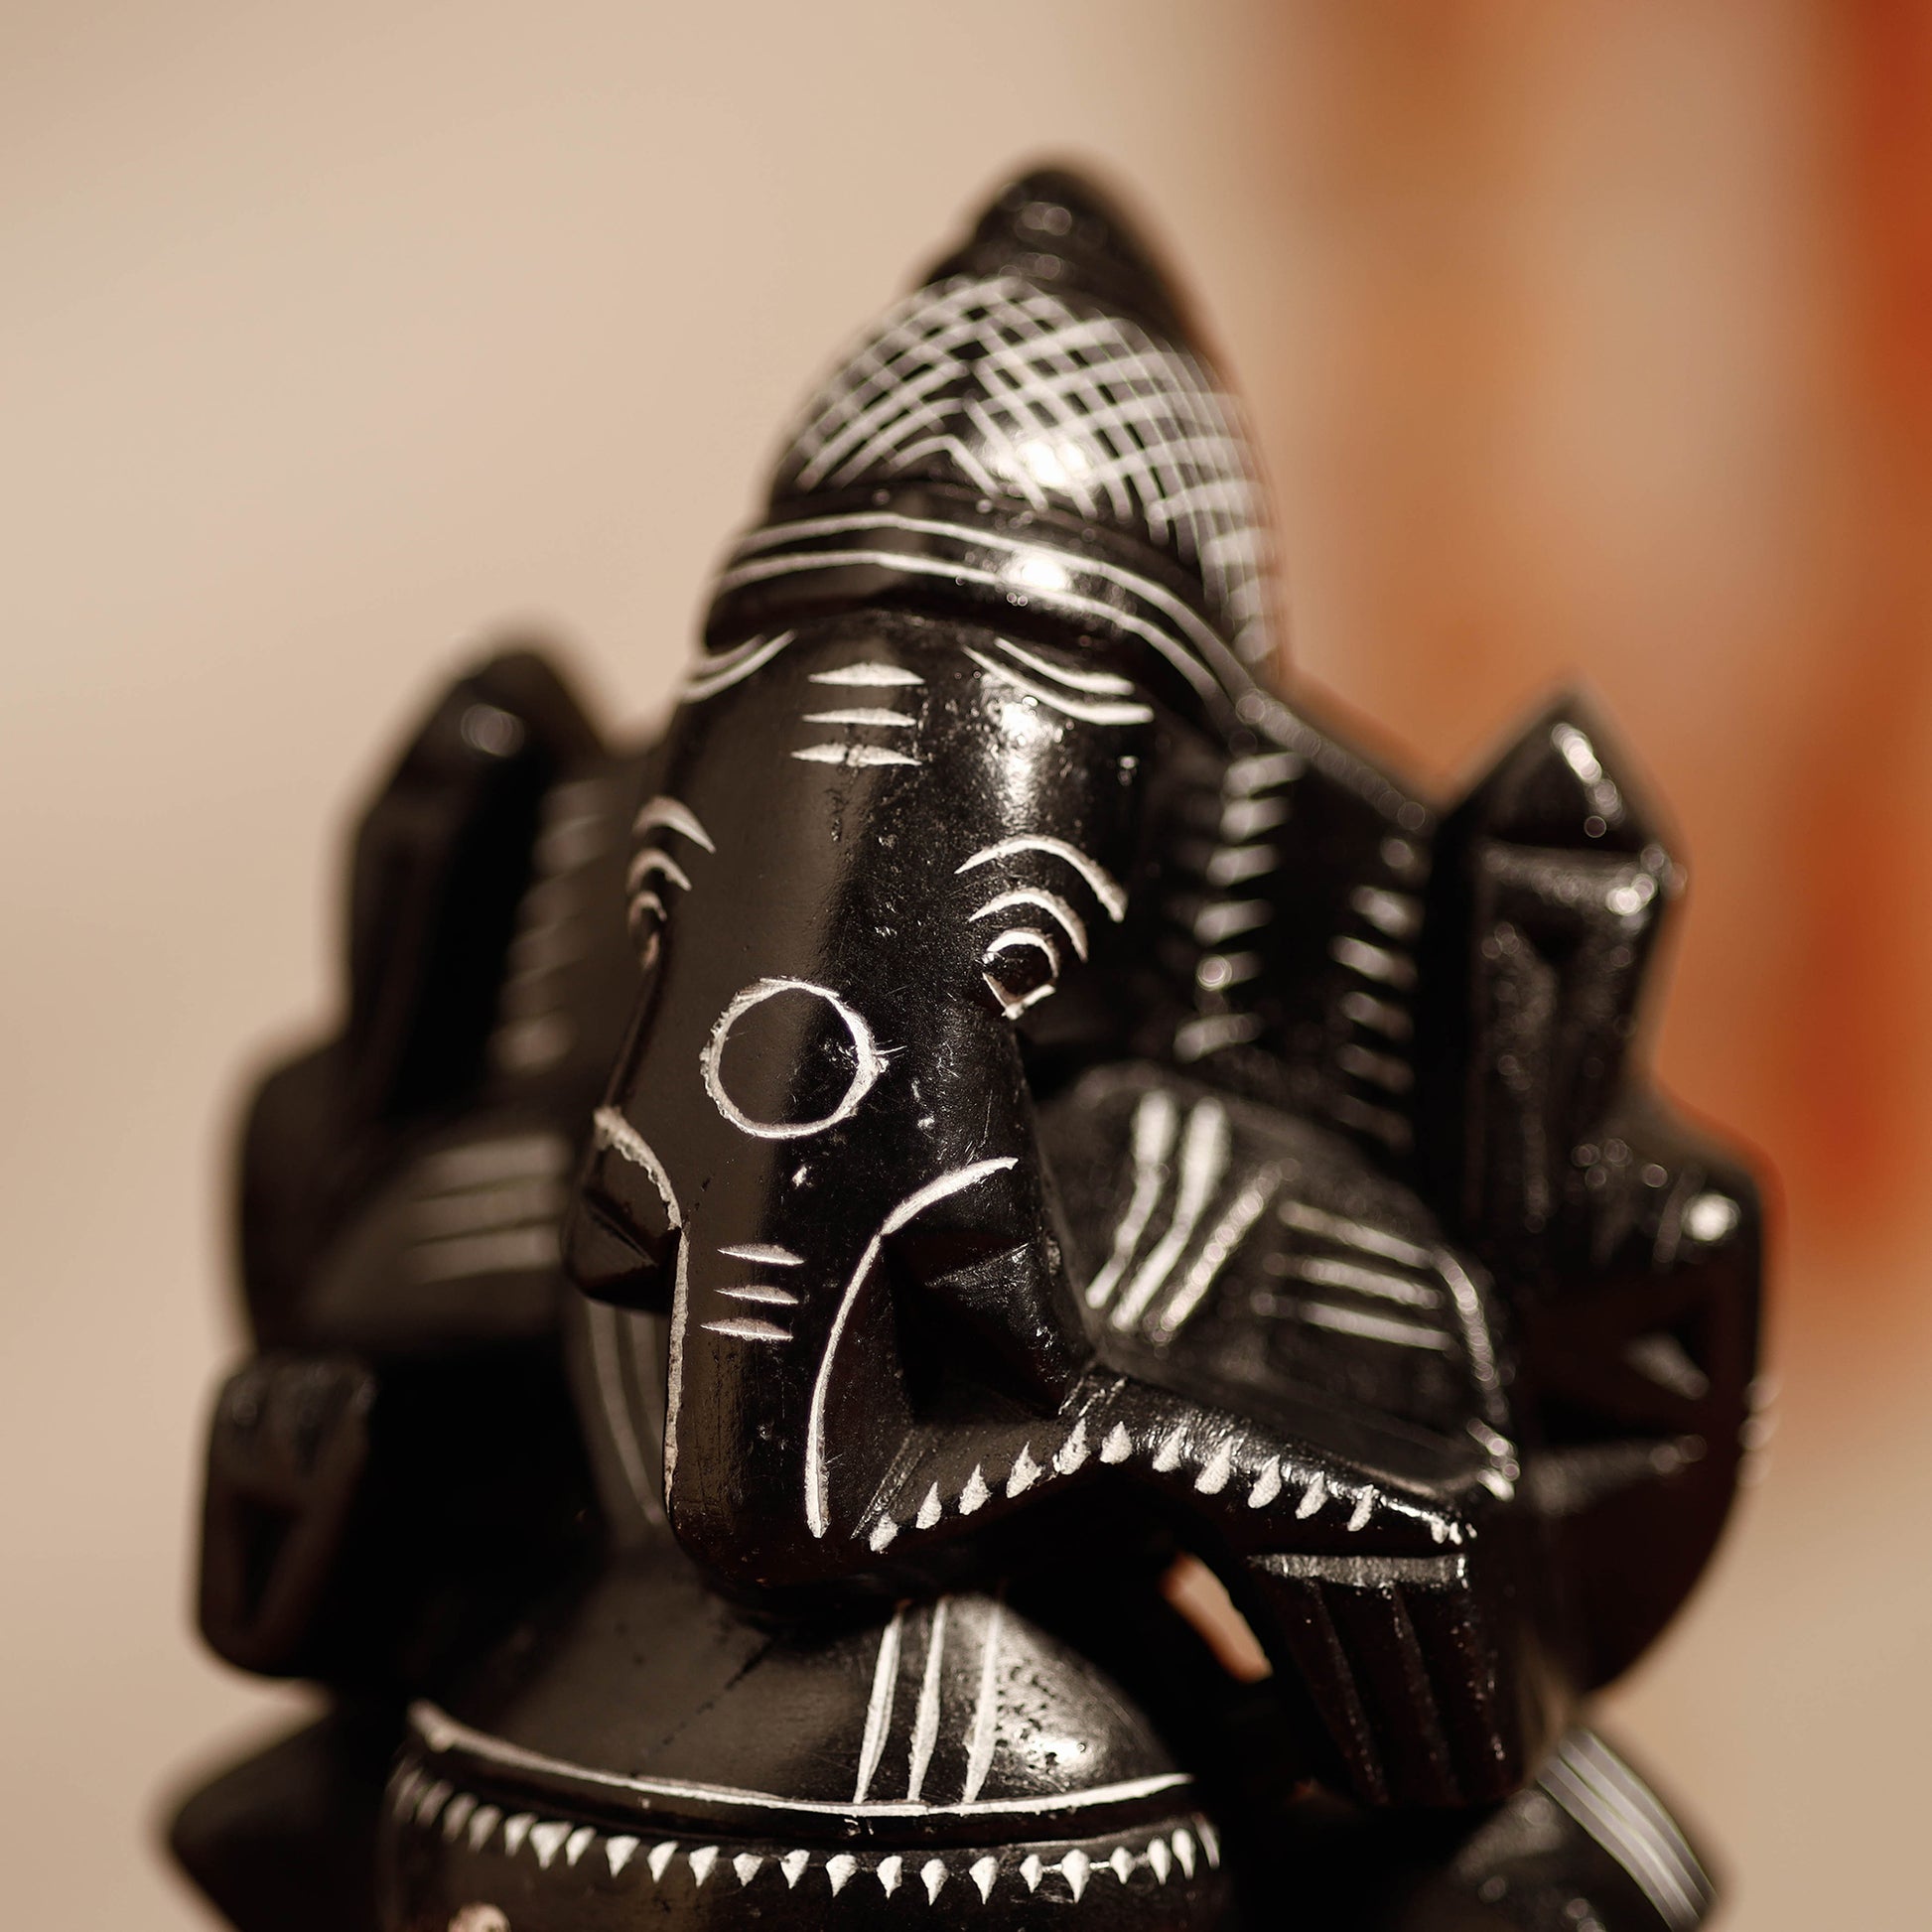 Chaturbhuja Ganesha 